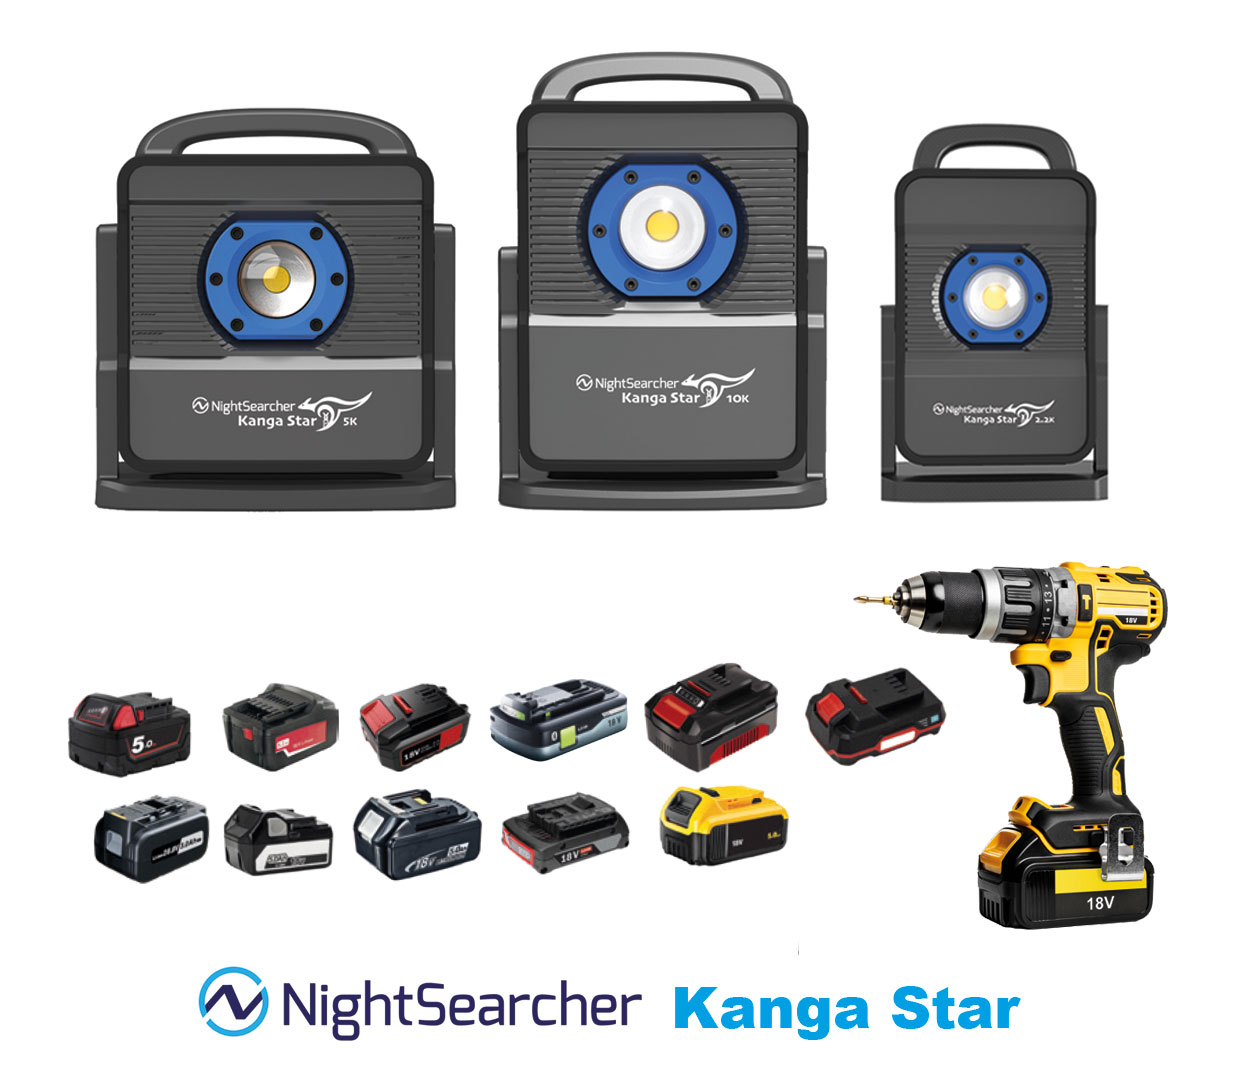 Nightsearcher Kangasta